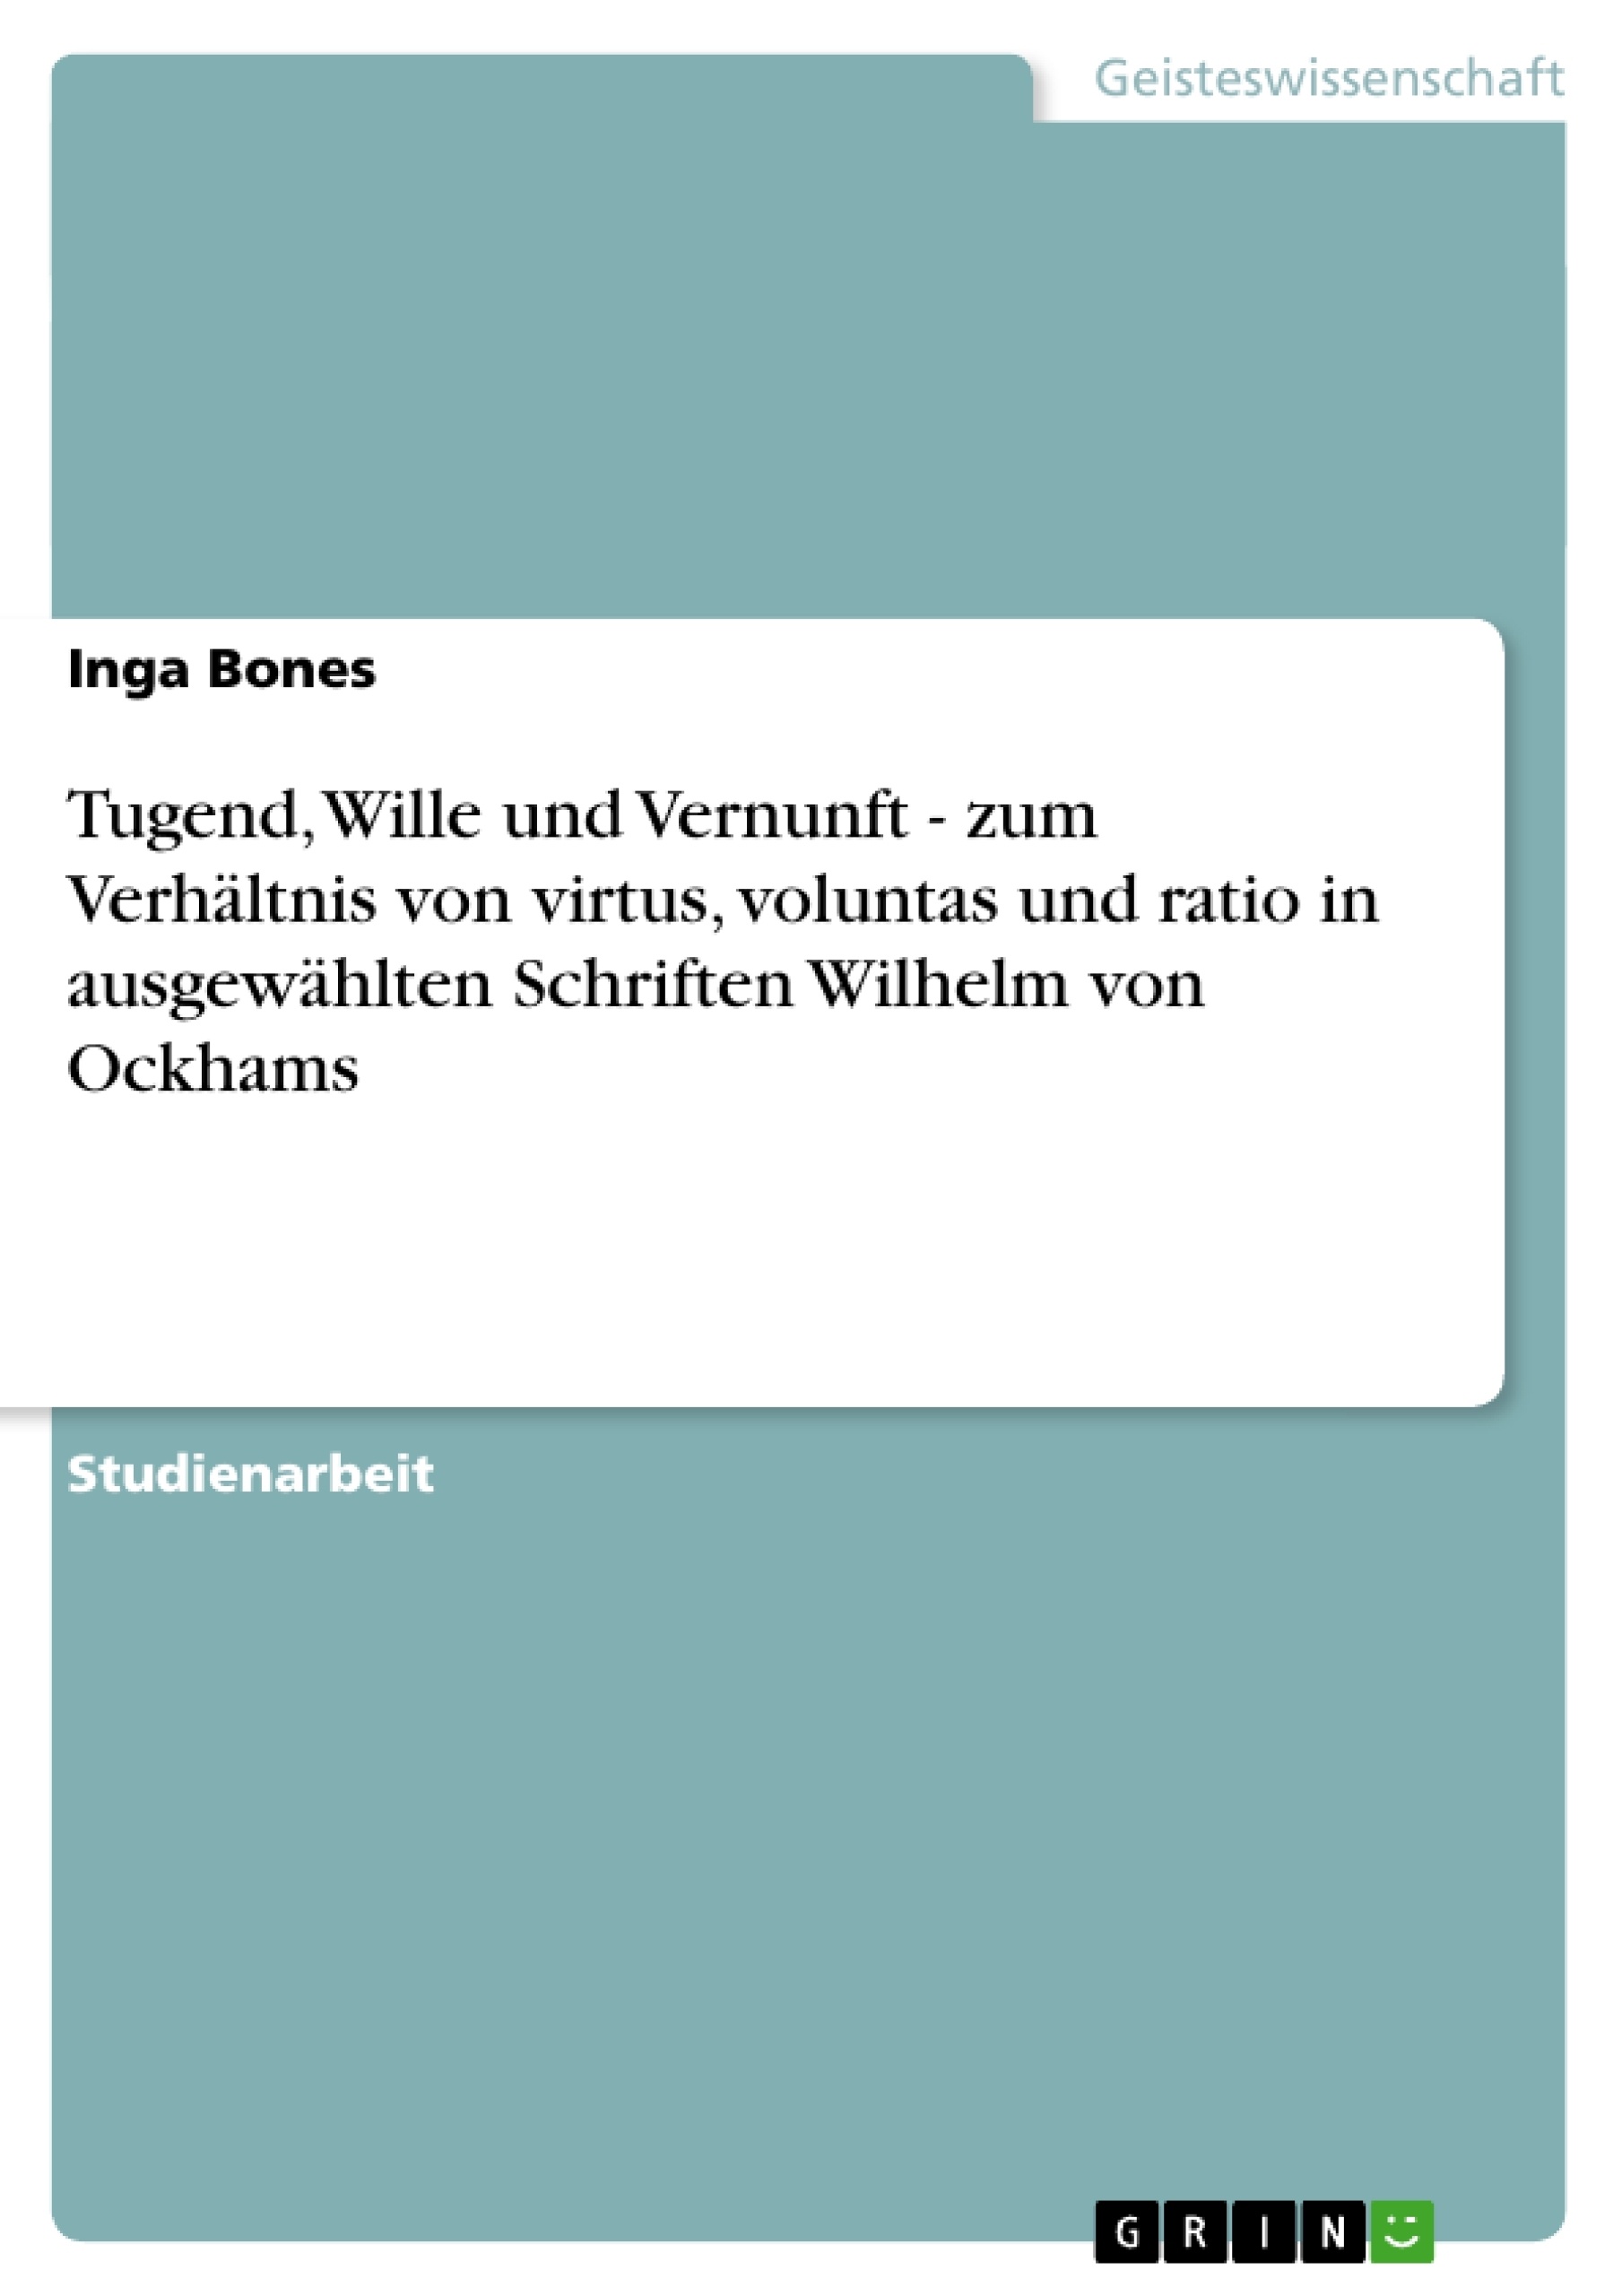 Title: Tugend, Wille und Vernunft - zum Verhältnis von virtus, voluntas und ratio in ausgewählten Schriften Wilhelm von Ockhams